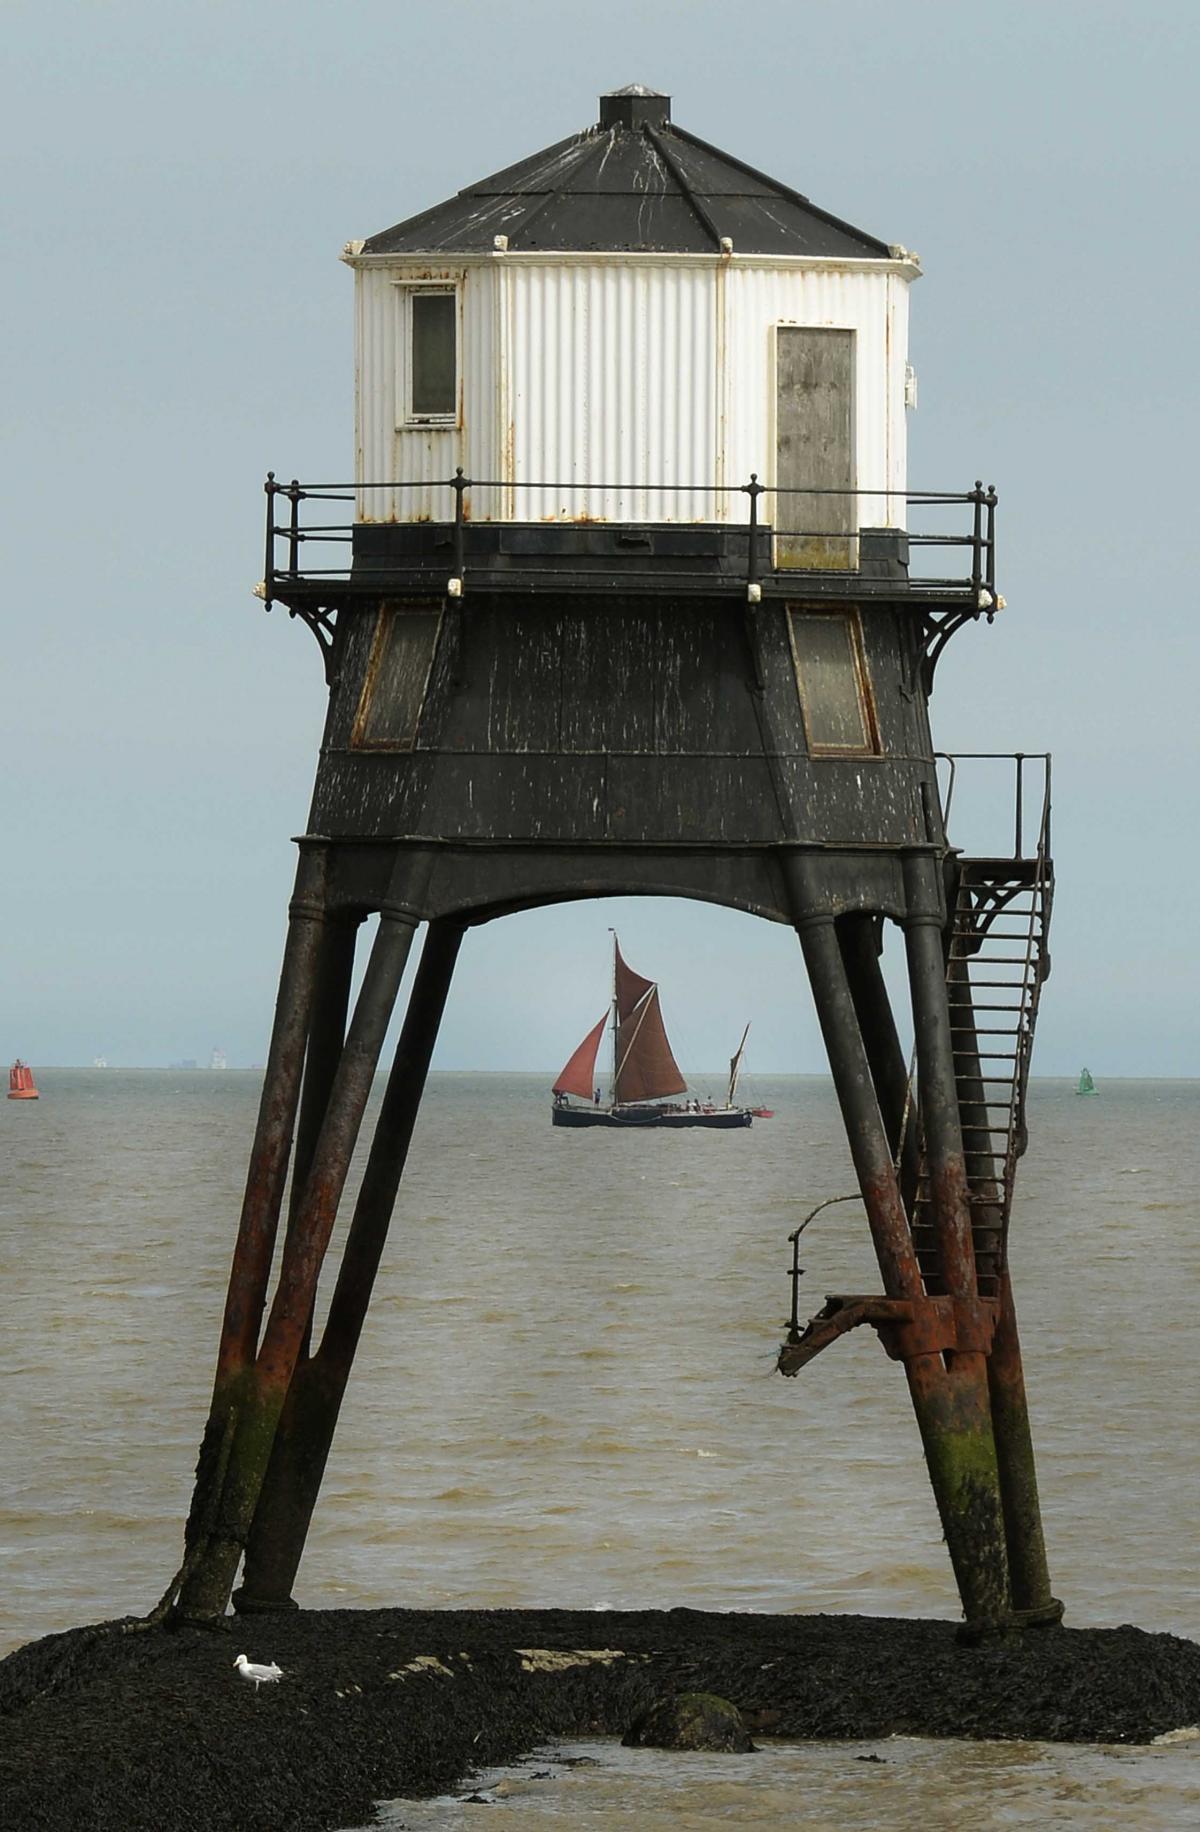 A lovely shot of Dovercourt lighthouse